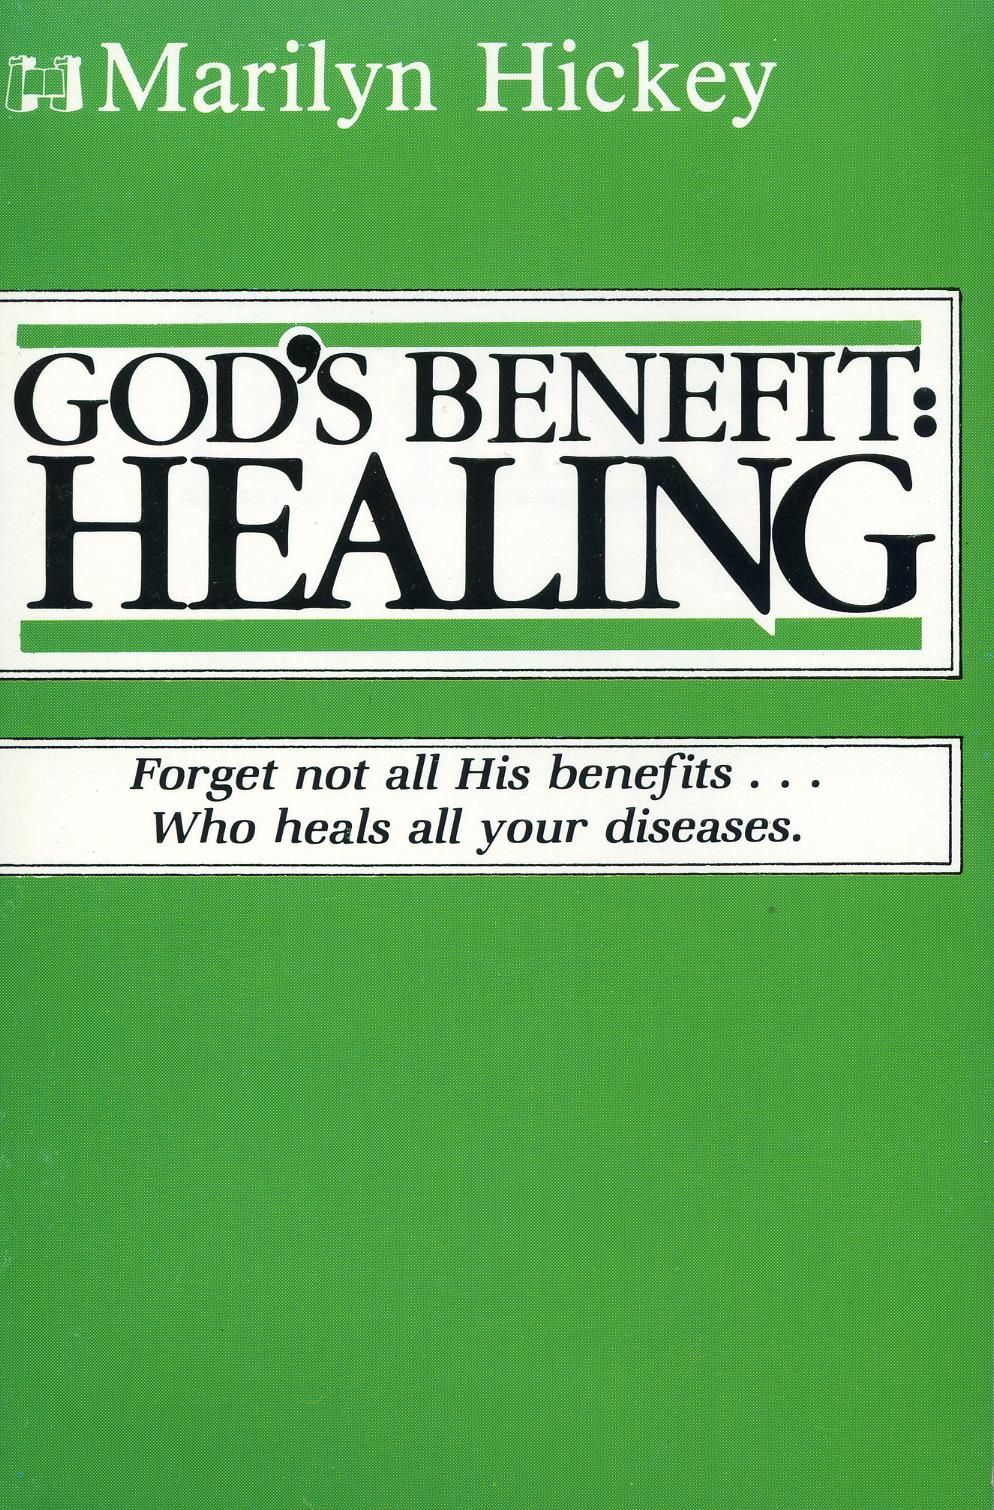 Englische Bücher - M. Hickey: God's Benefit for Healing